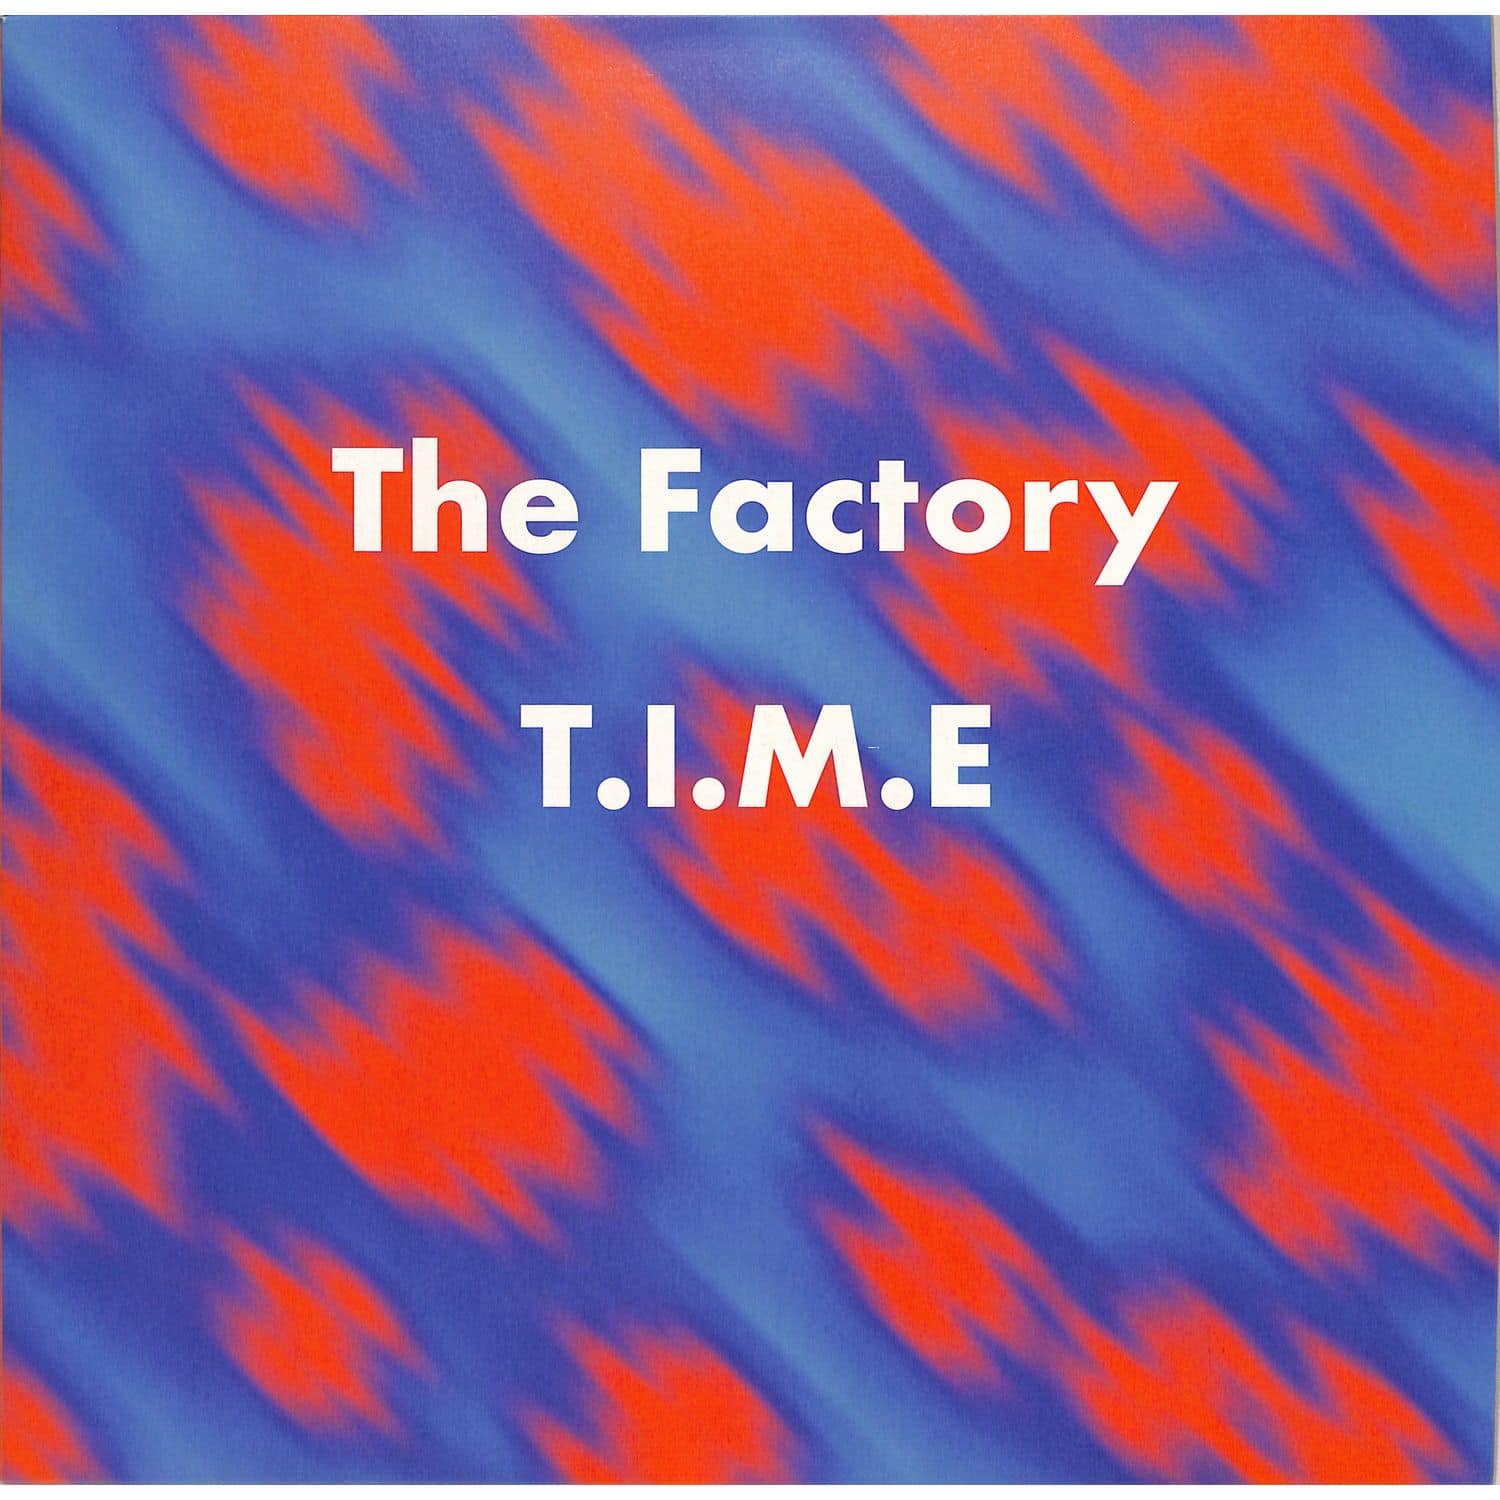 The Factory - T.I.M.E. 